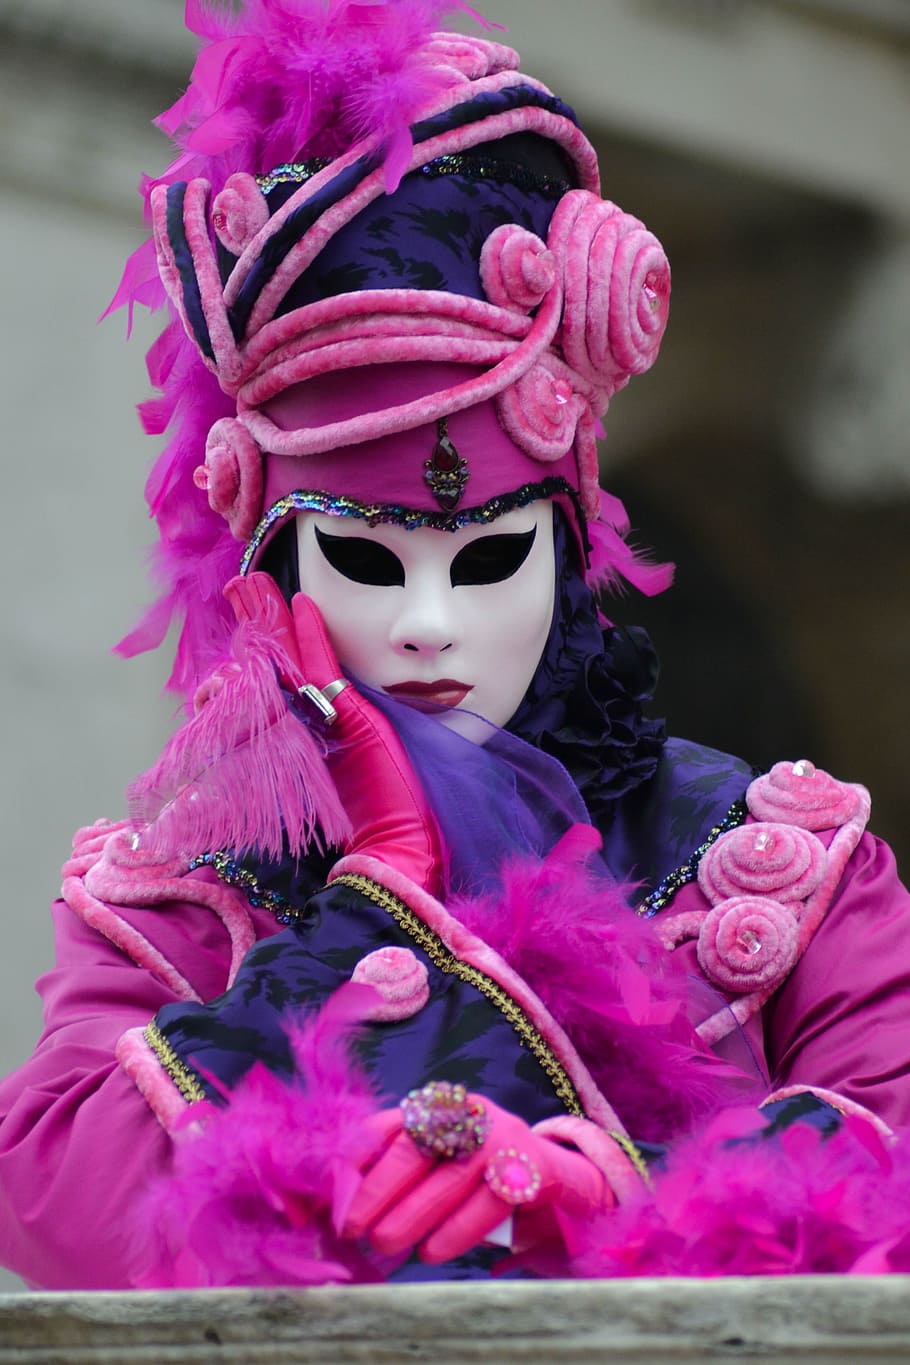 selectivo, enfoque fotografía persona, rosa, púrpura, atuendo, máscara, disfraz, encantadora, carnaval, gente